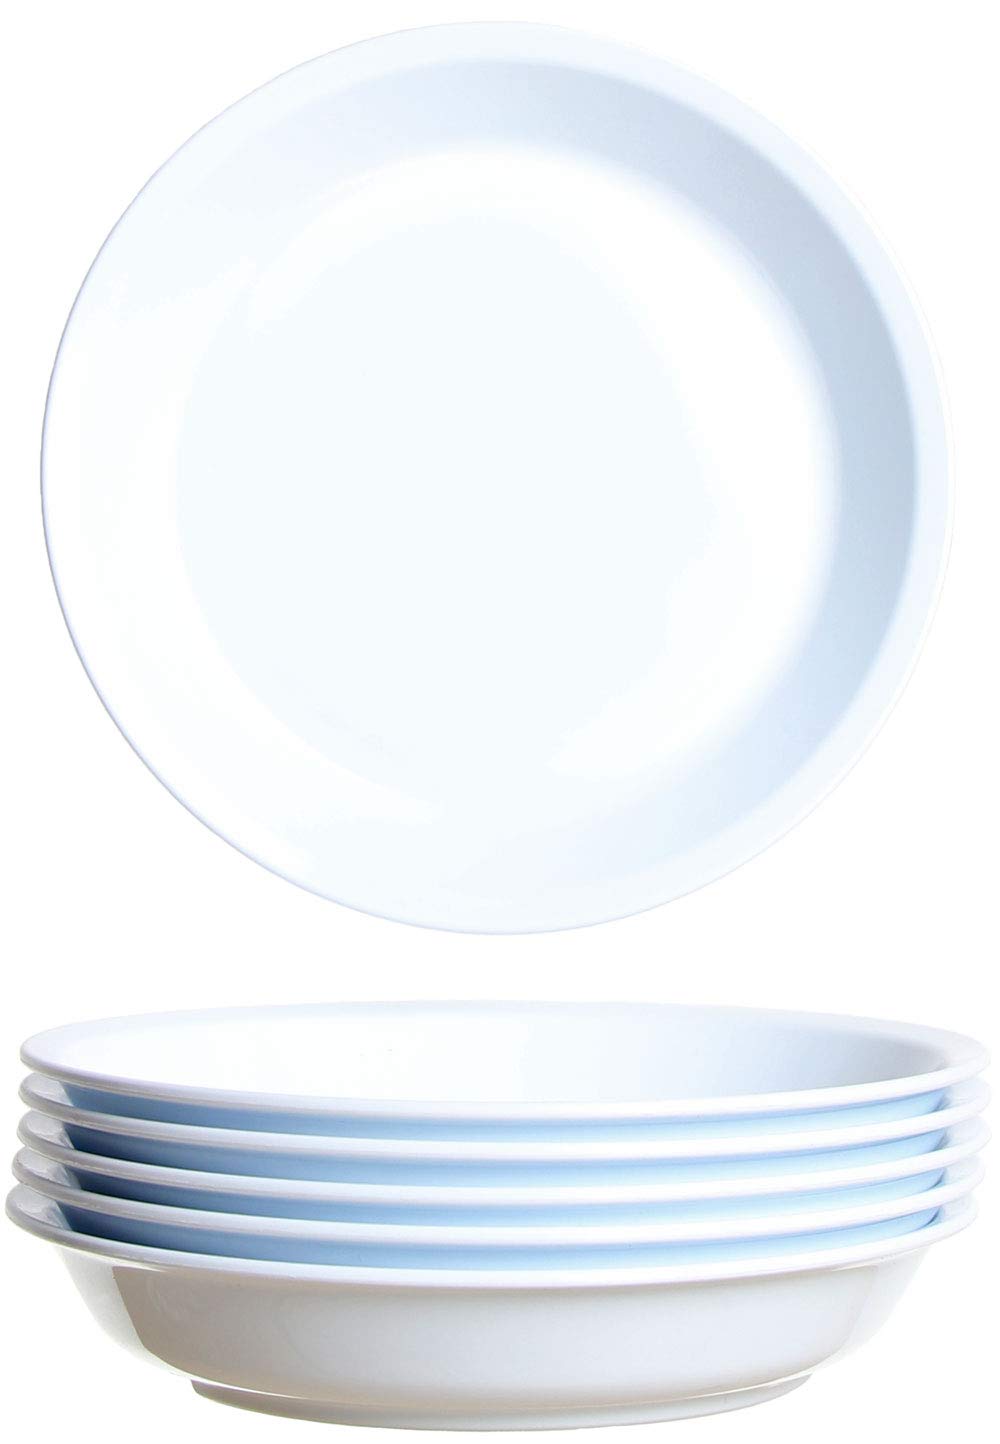 grand choix idea-station Gastro Assiette Plastique 6 x 21 cm - Blanc - Assiette Enfant - Assiette Creuse - Vaisselle Camping mMOXt5O1U vente chaude